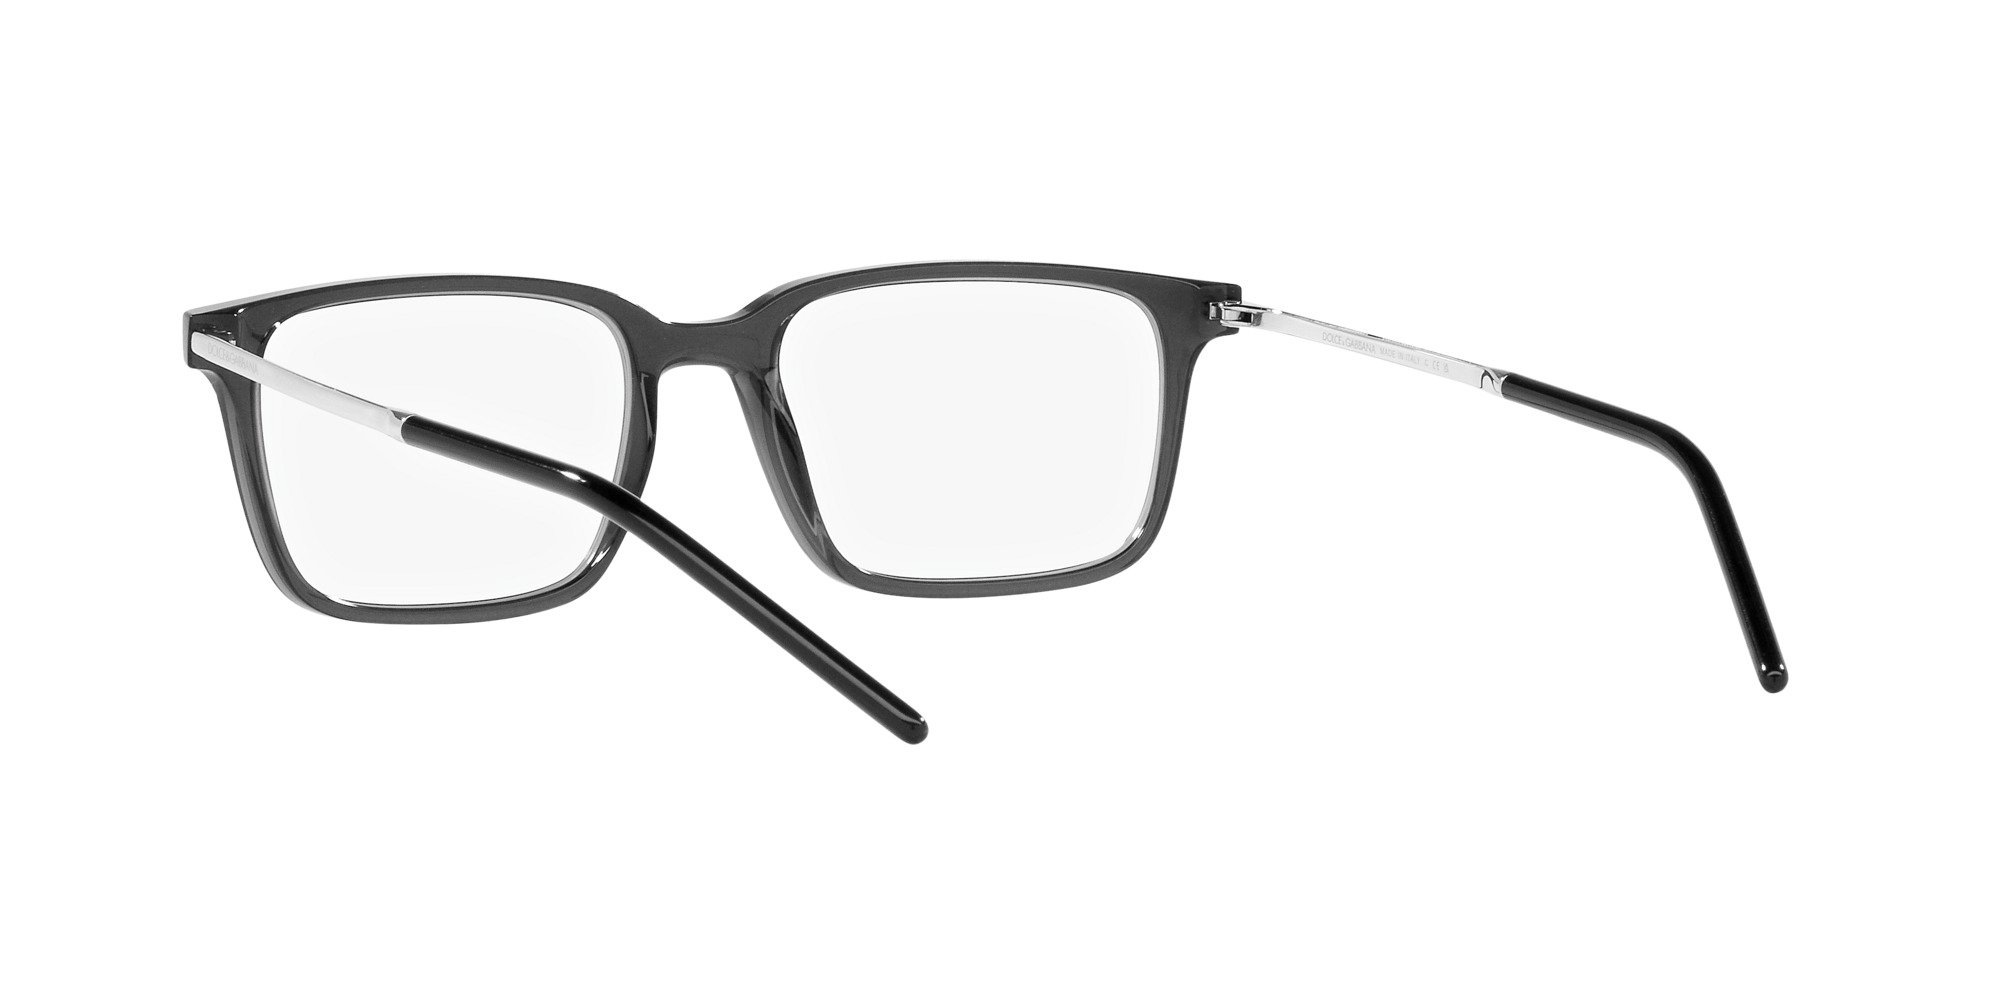 Das Bild zeigt die Korrektionsbrille DG5099 3255 von der Marke D&G in grau.